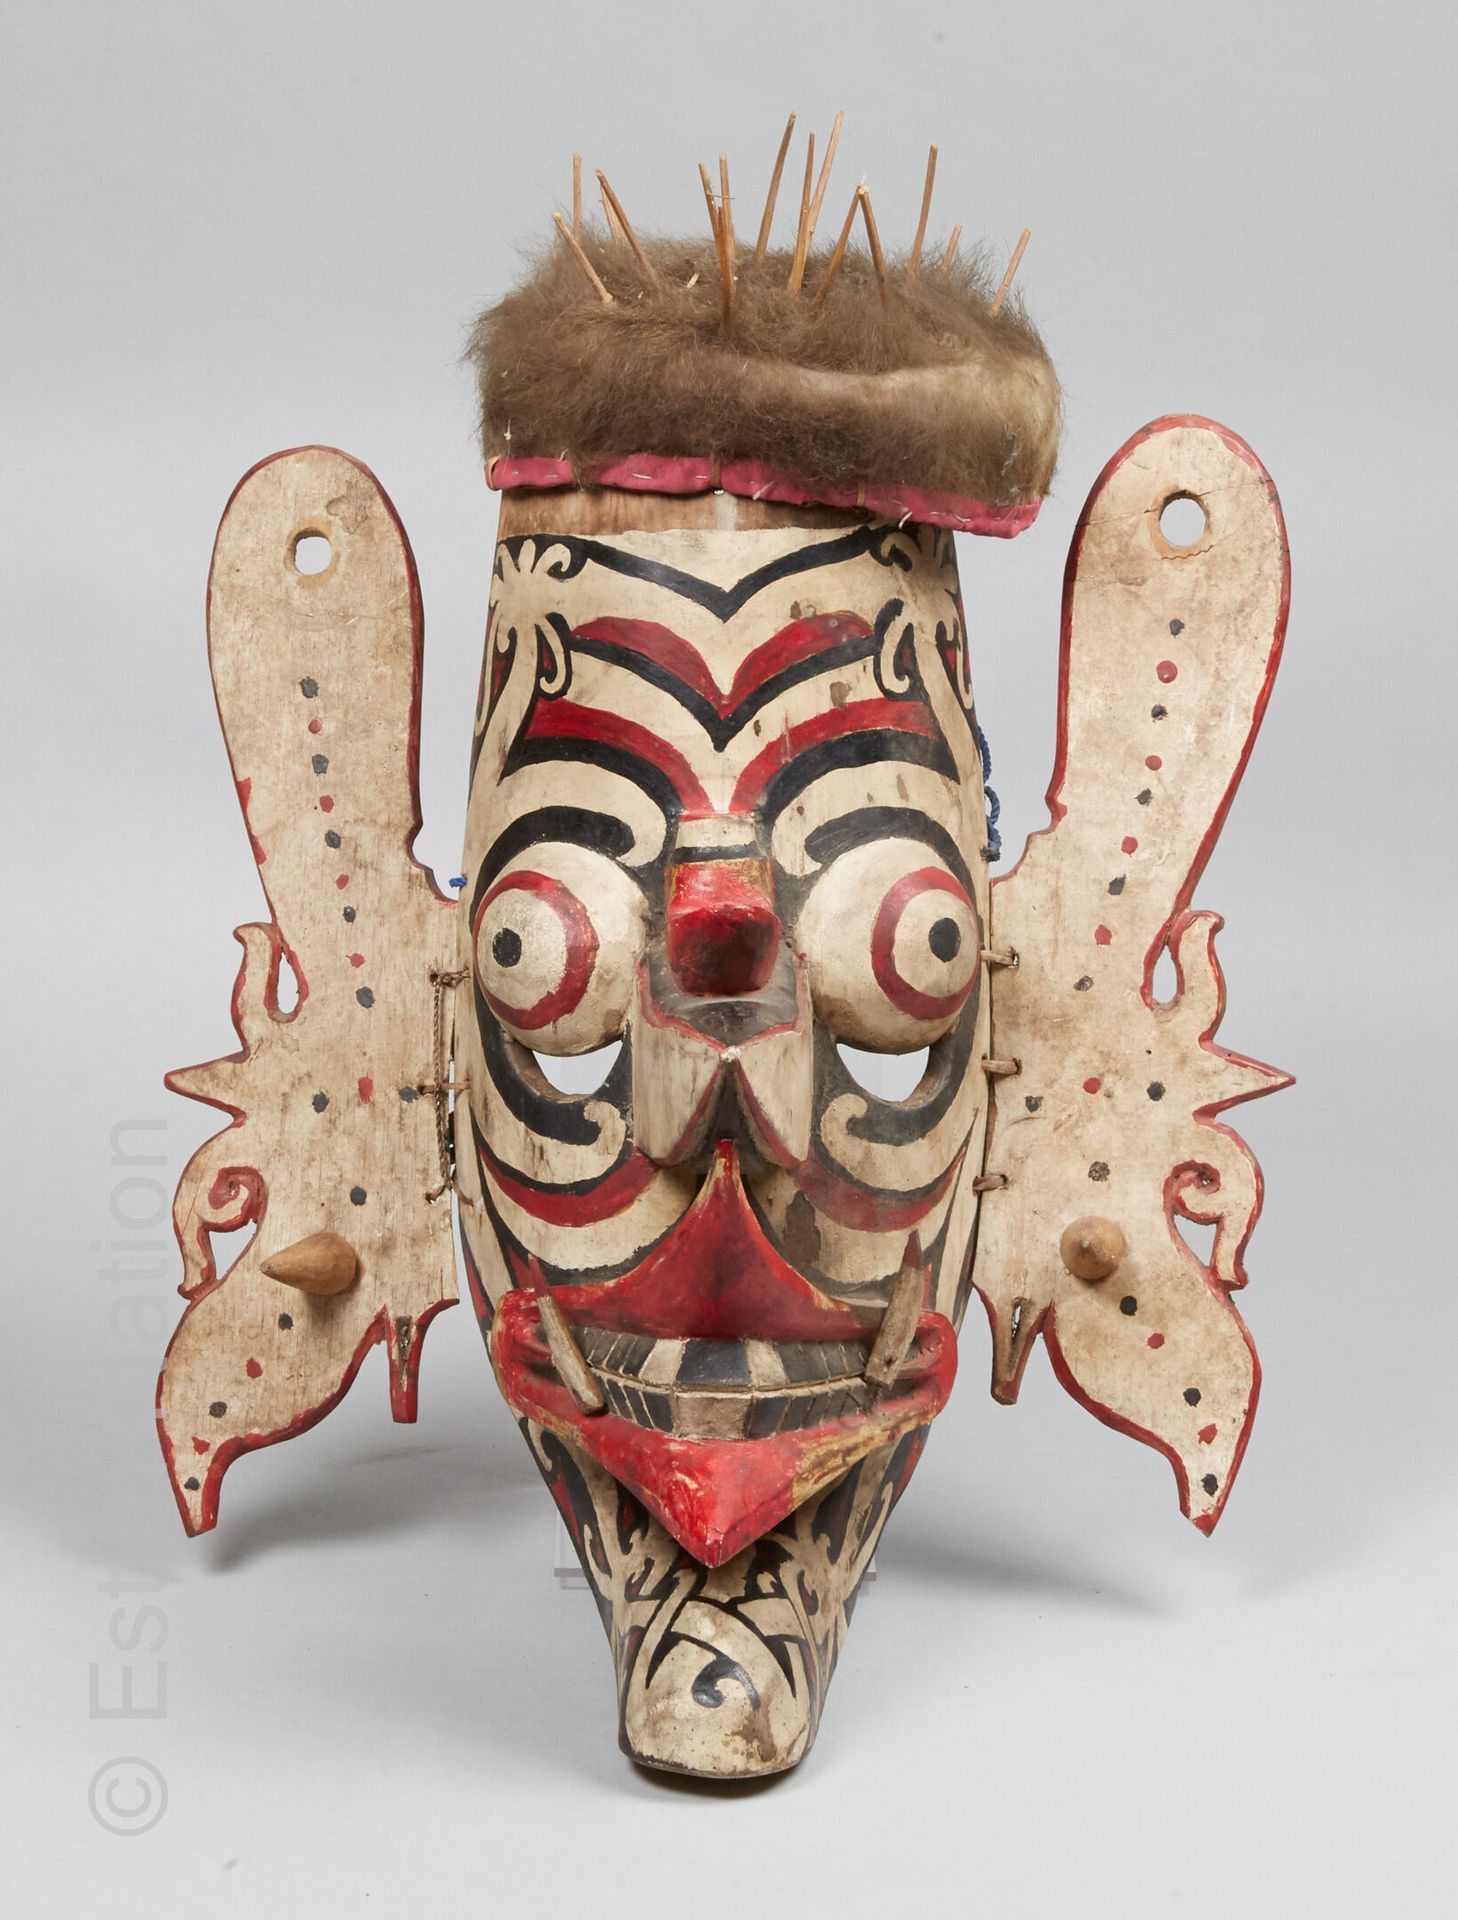 DAYAK - BORNEO 达亚克-伯尔尼奥



胡多克式面具，木头雕刻，天然颜料，两只耳朵上有红色和黑色的点和两个点的装饰，顶部有一个带钉的发帽装饰。

&hellip;